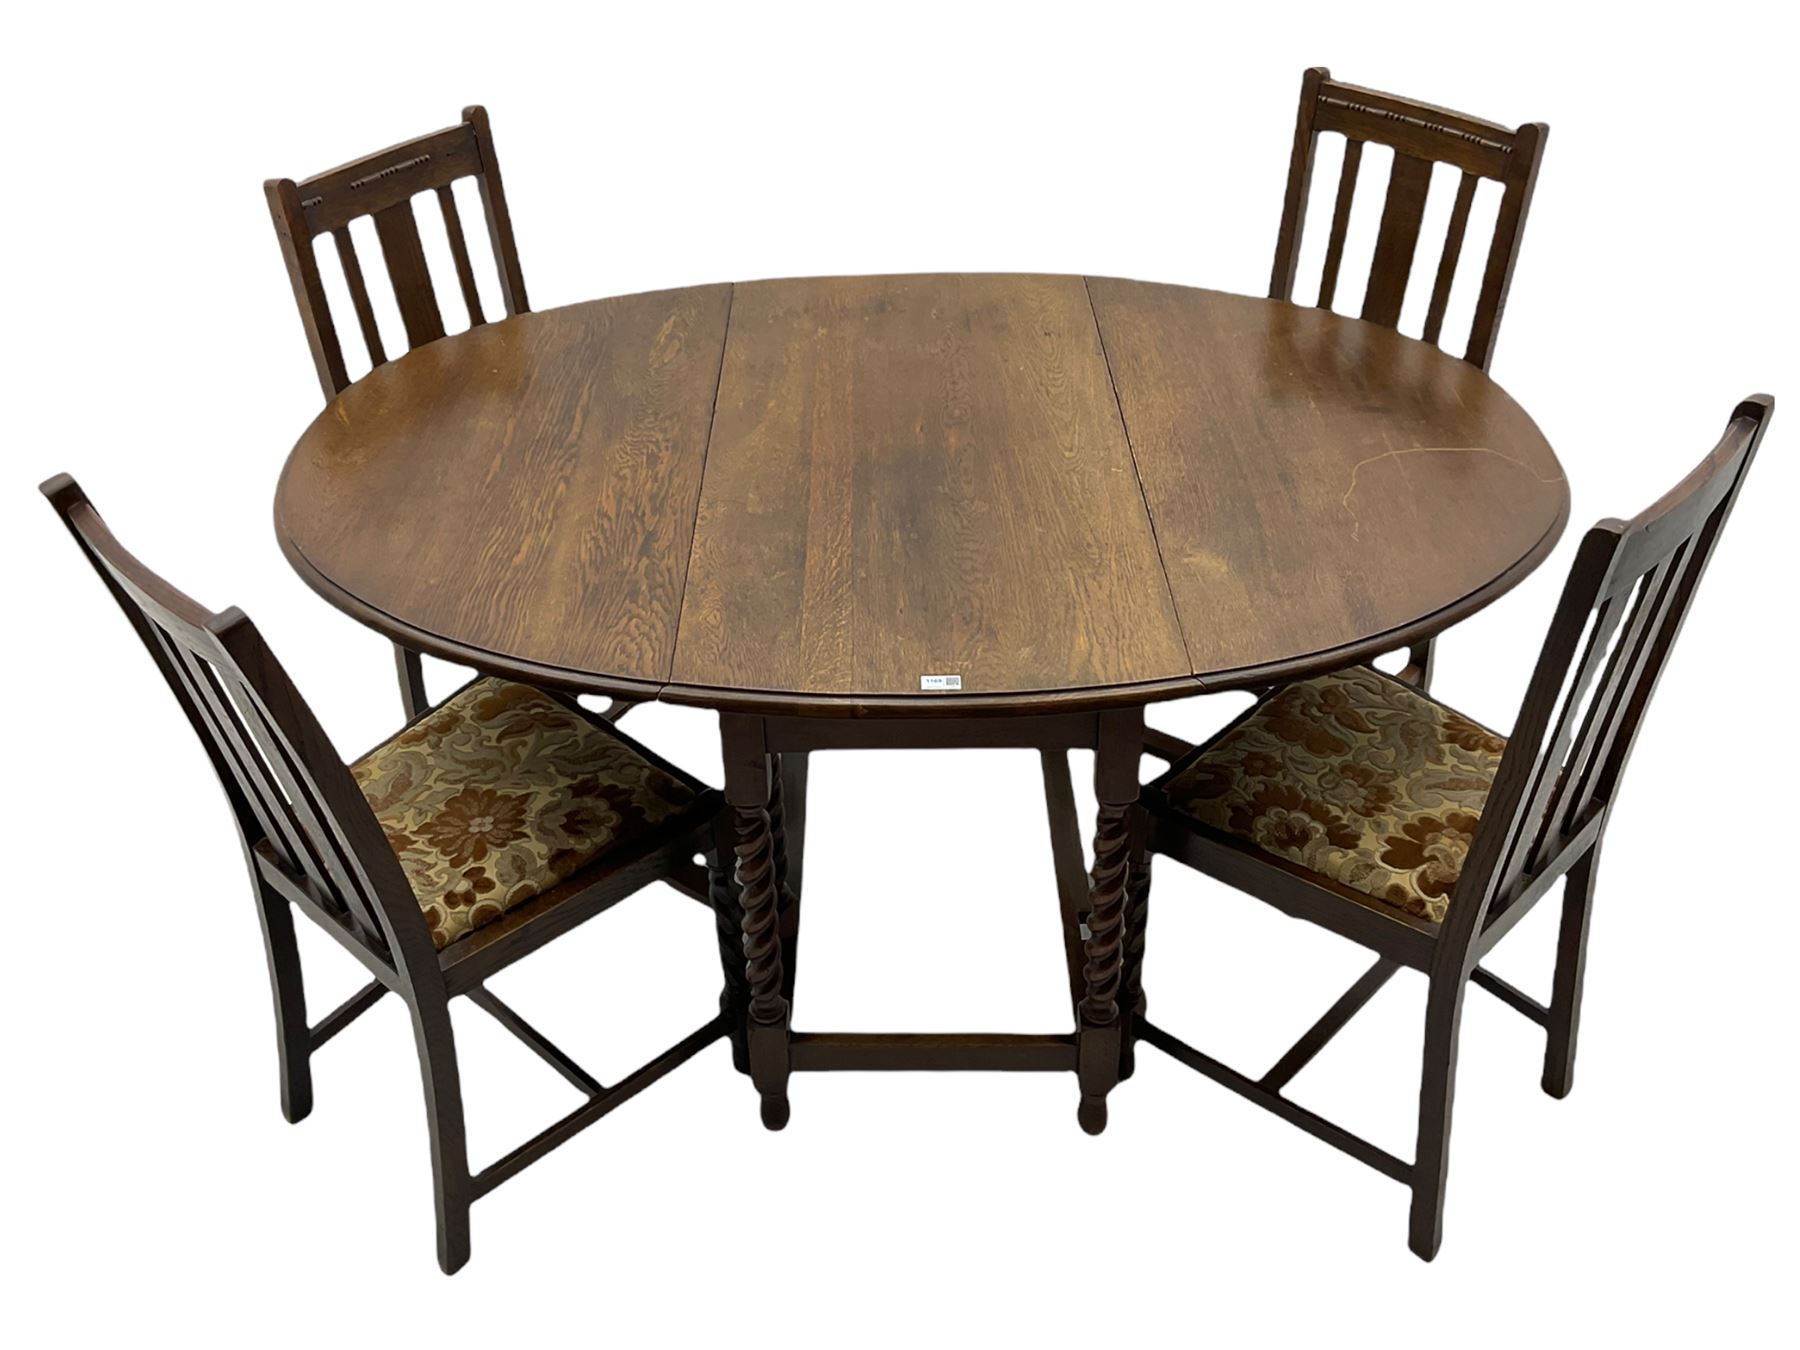 Early 20th century oak barley twist drop leaf dining table (105cm x 154cm - Image 13 of 24